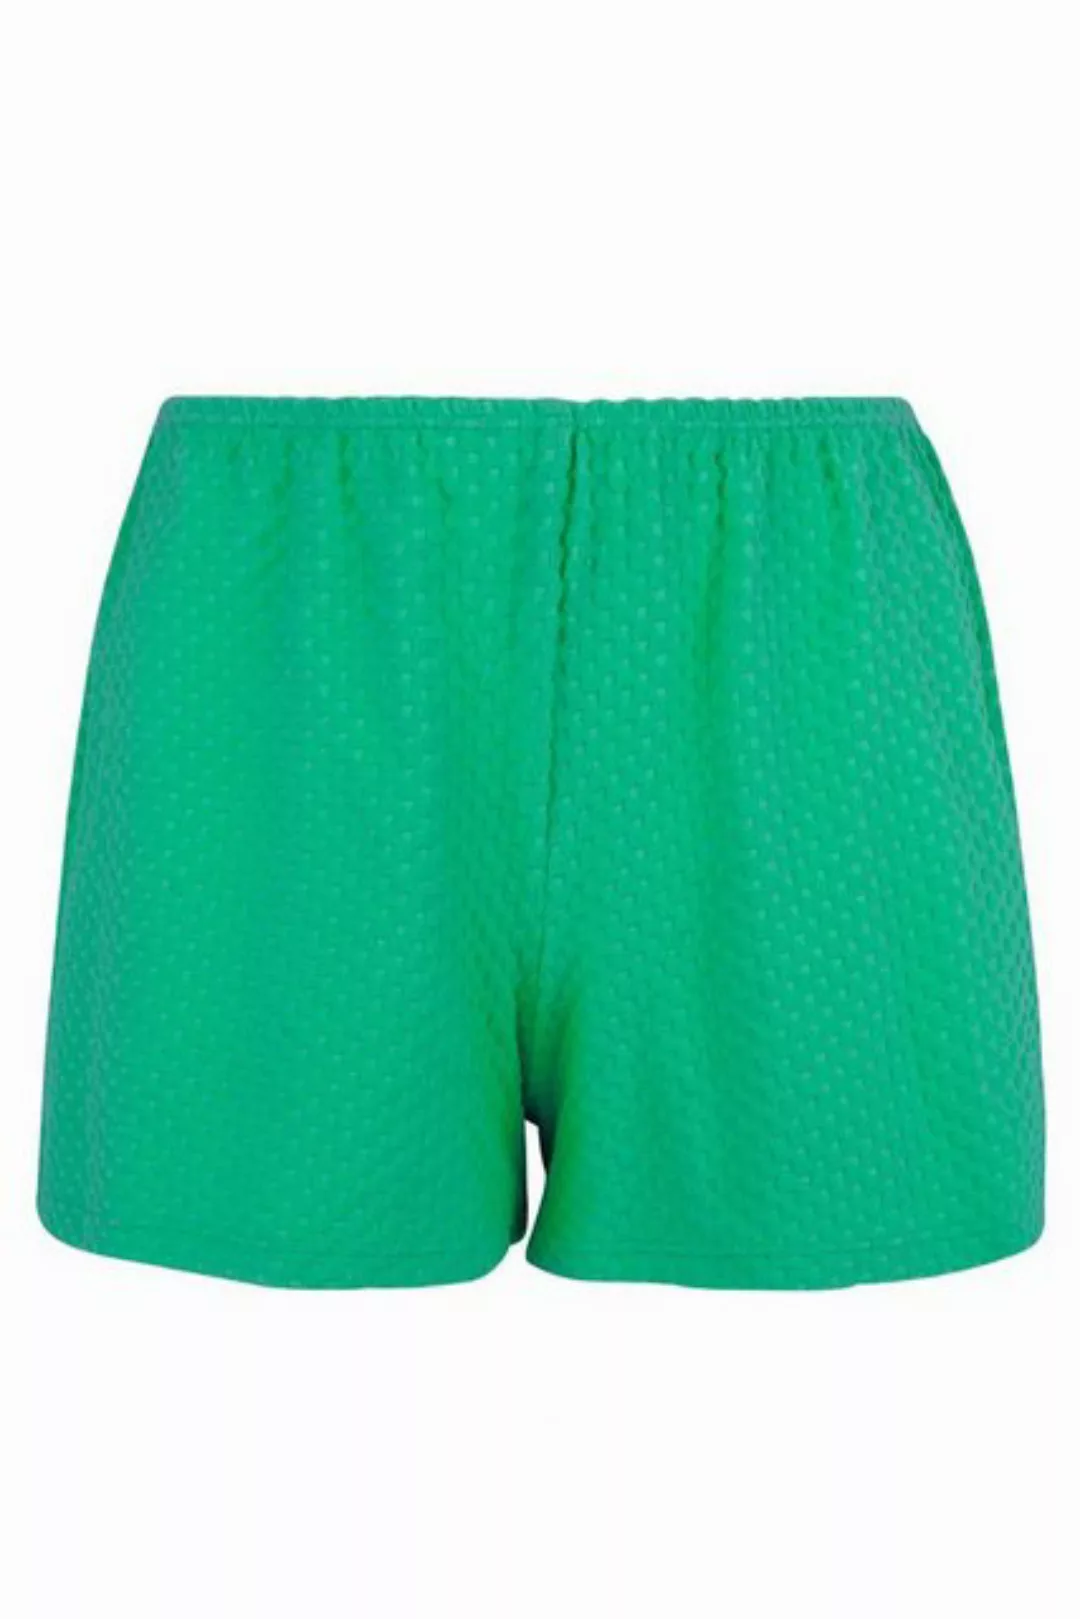 Antigel Shorts La Chiquissima 36 grün günstig online kaufen